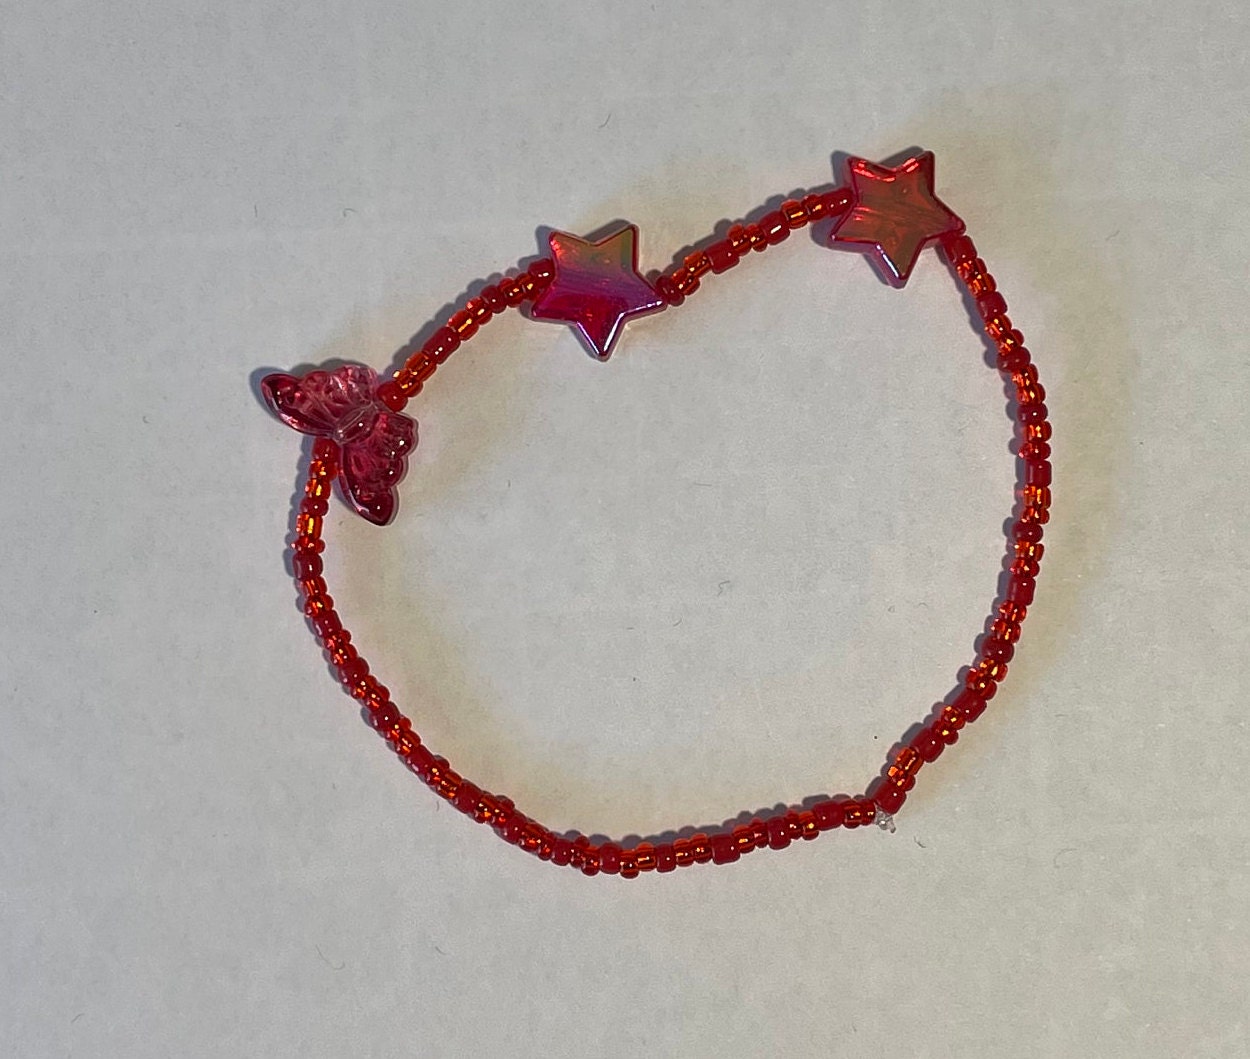 XIAQUJ Hand Woven Butterfly Pendant Bracelet Adjustable New Year Red Rope  Bracelet Bracelet with Red Rope Butterfly Pendant Bracelets G